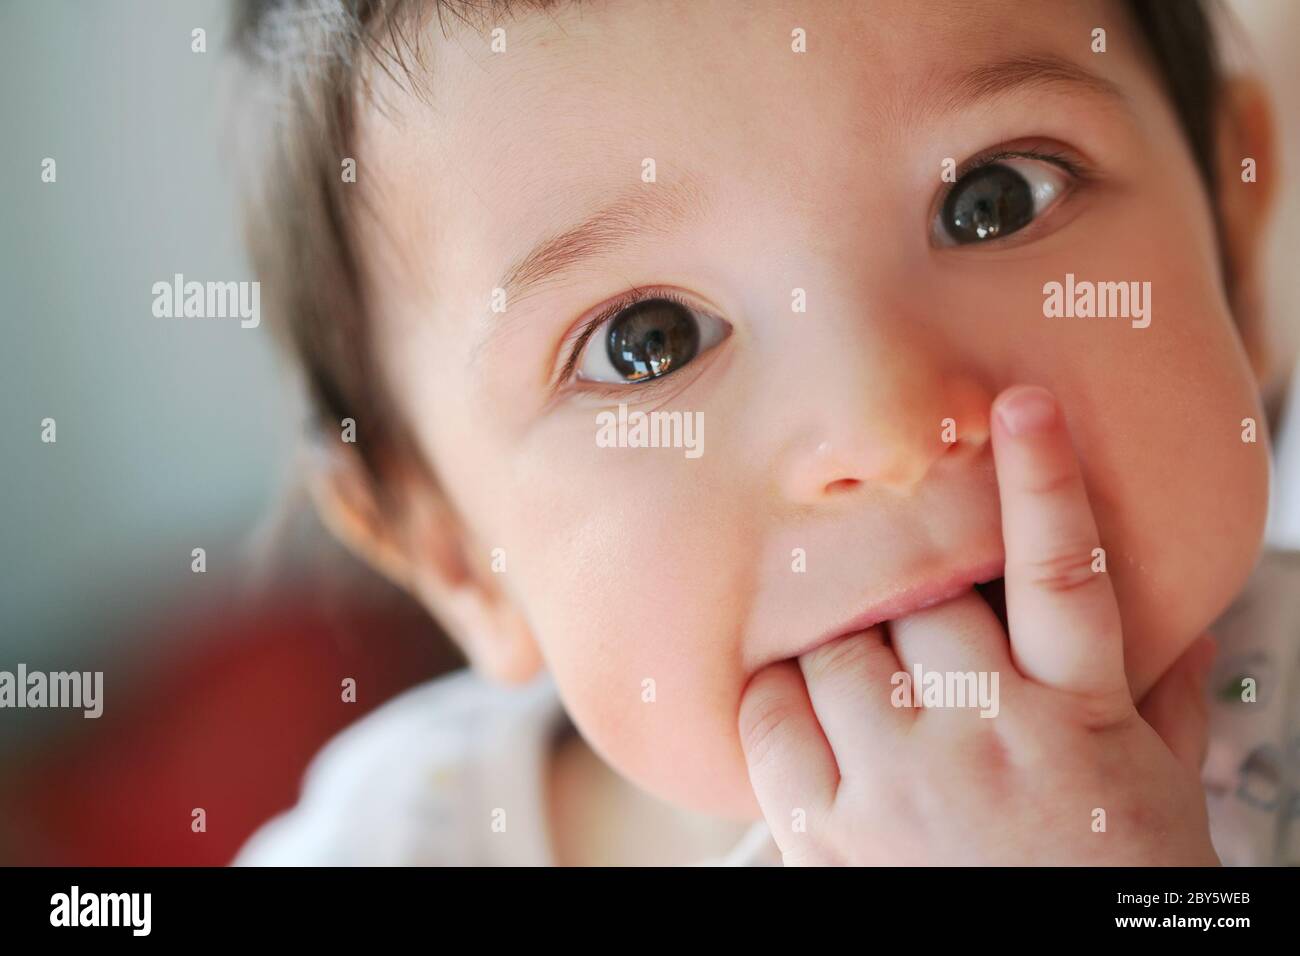 un petit garçon touche ses premières dents Banque D'Images